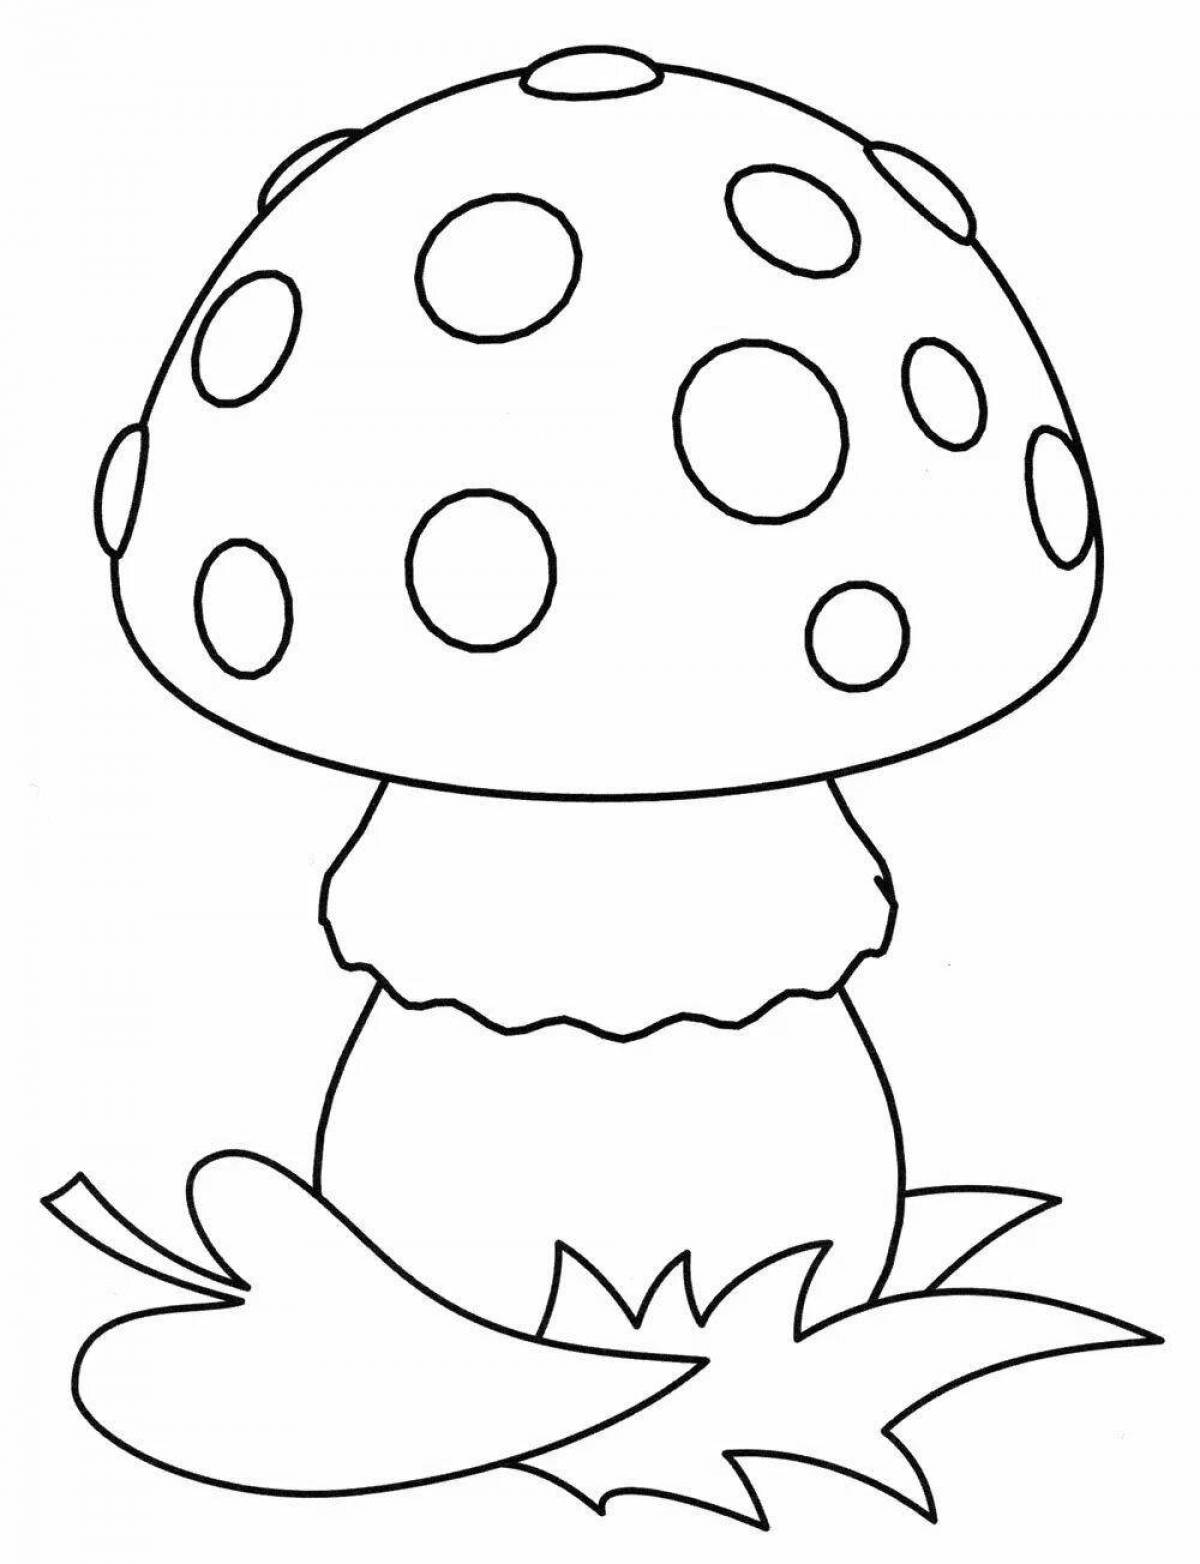 Восхитительная раскраска грибов для детей 3-4 лет